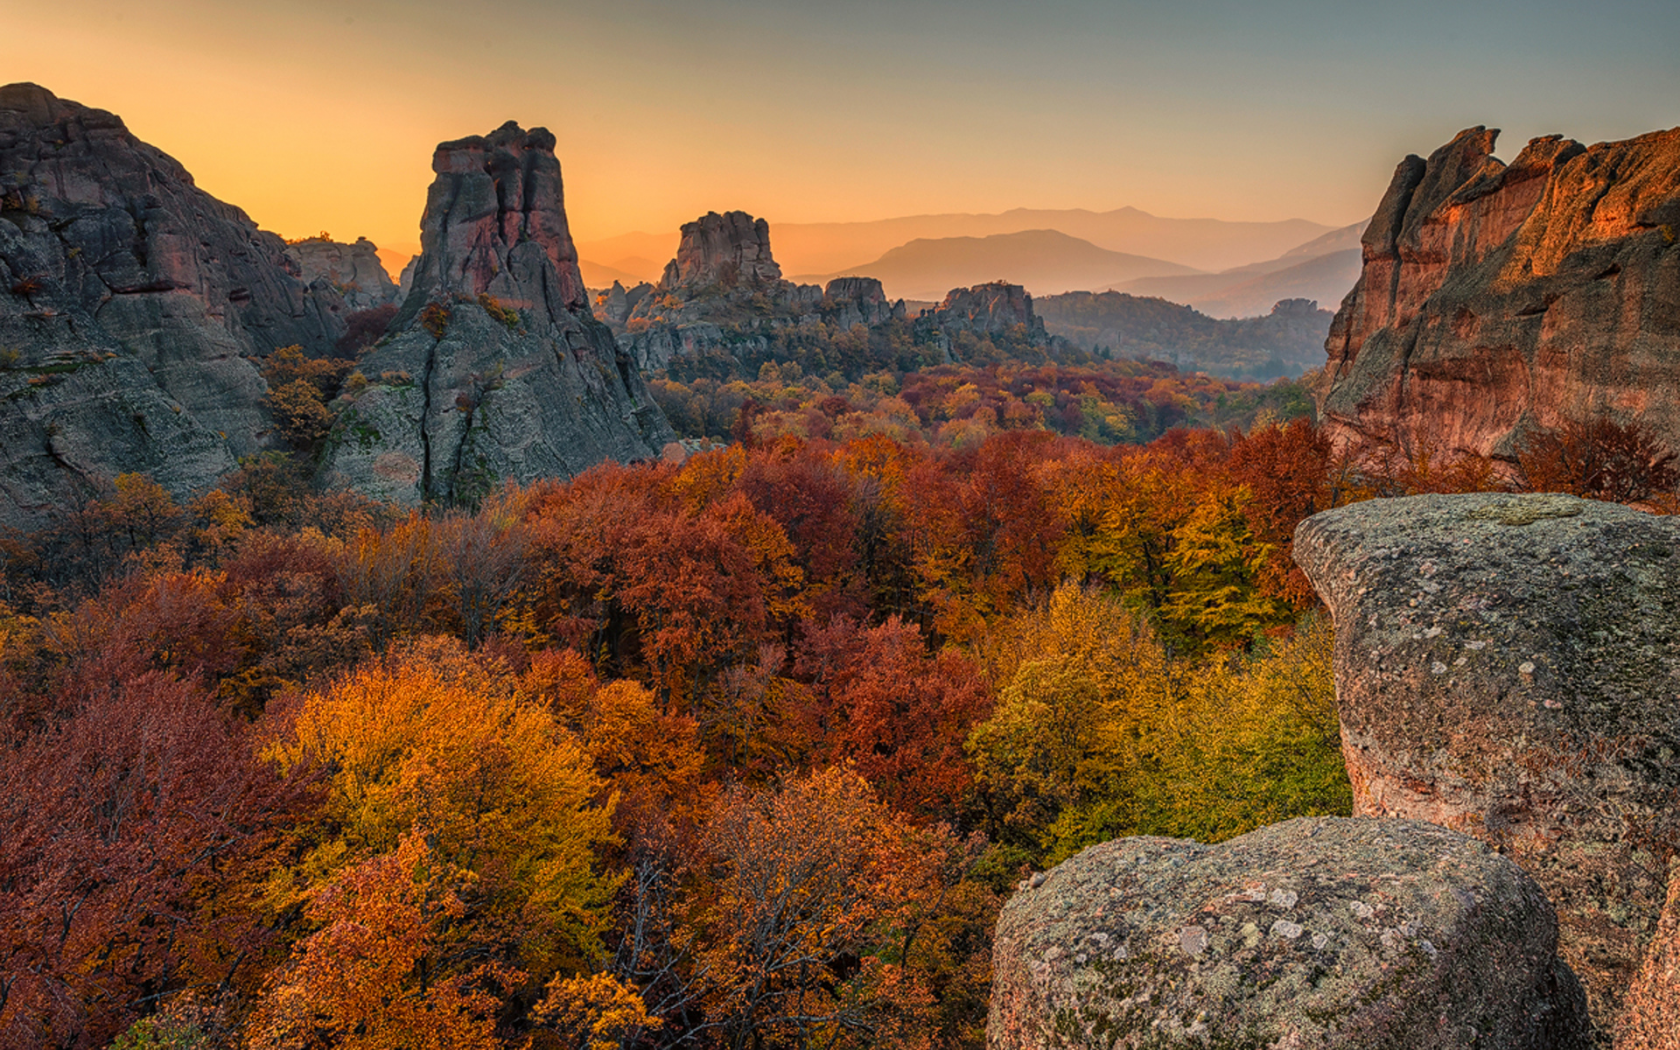 осень, скалы, облака, небо, горы, деревья, лес, туман, пейзаж, природа, Белоградчишки скали, Стара планина, Балканские горы, Болгария